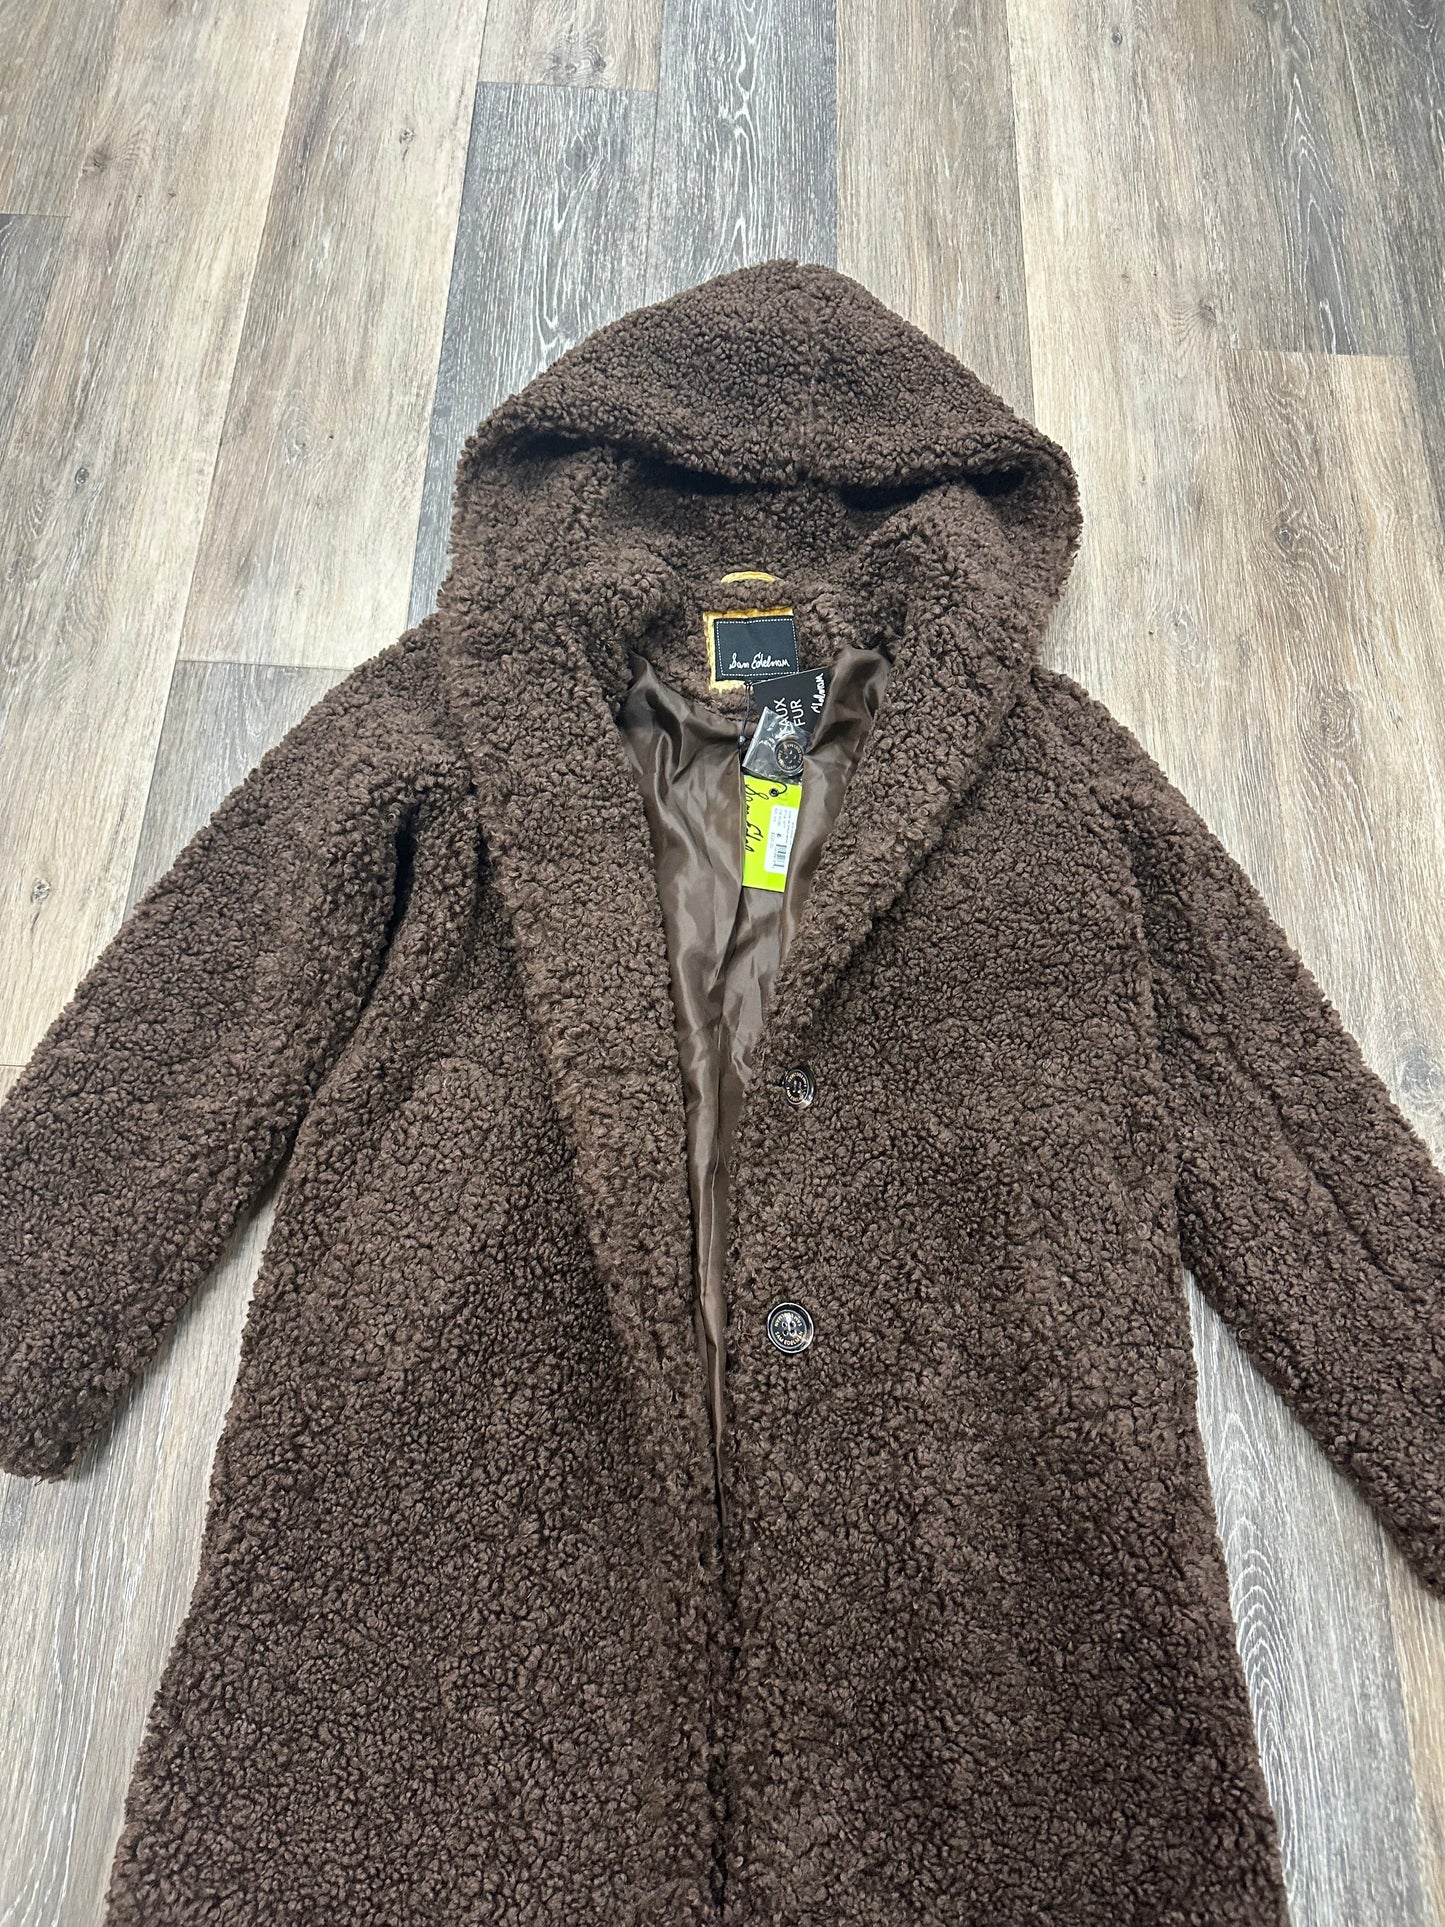 Coat Faux Fur & Sherpa By Sam Edelman  Size: Xxs